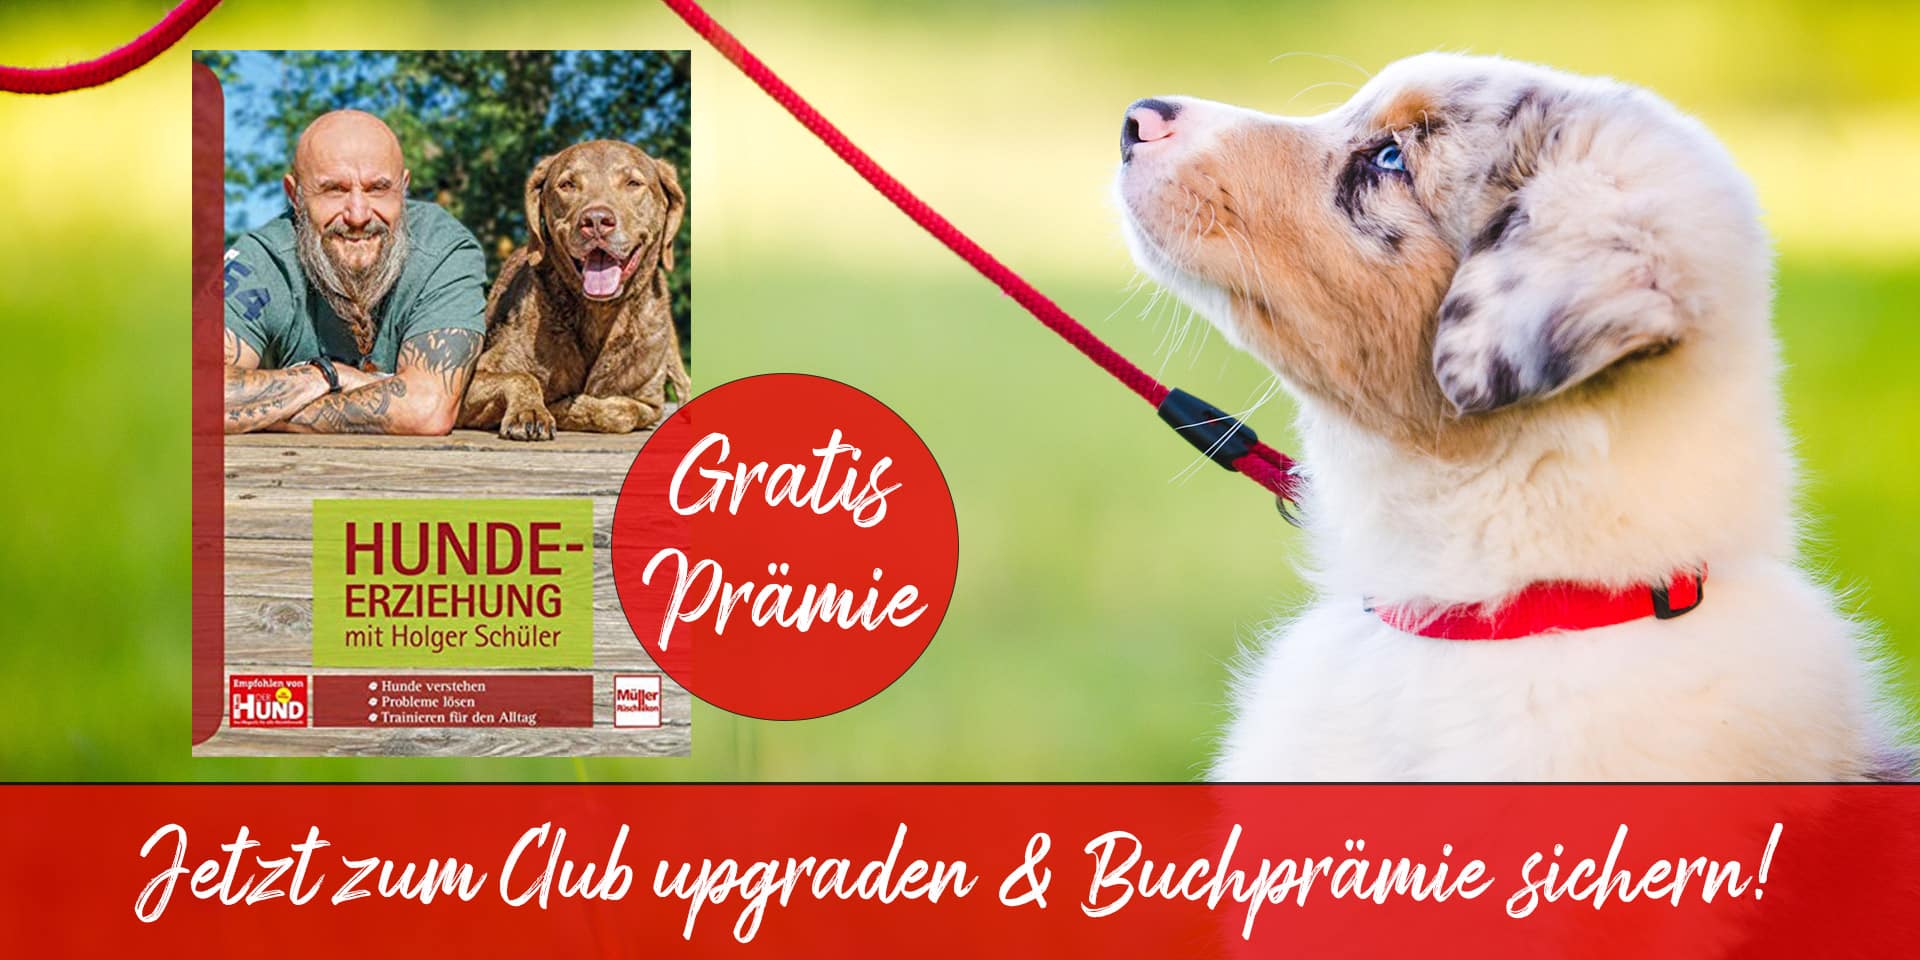 Buch "Hundeerziehung" von Holger Schüler als Prämie